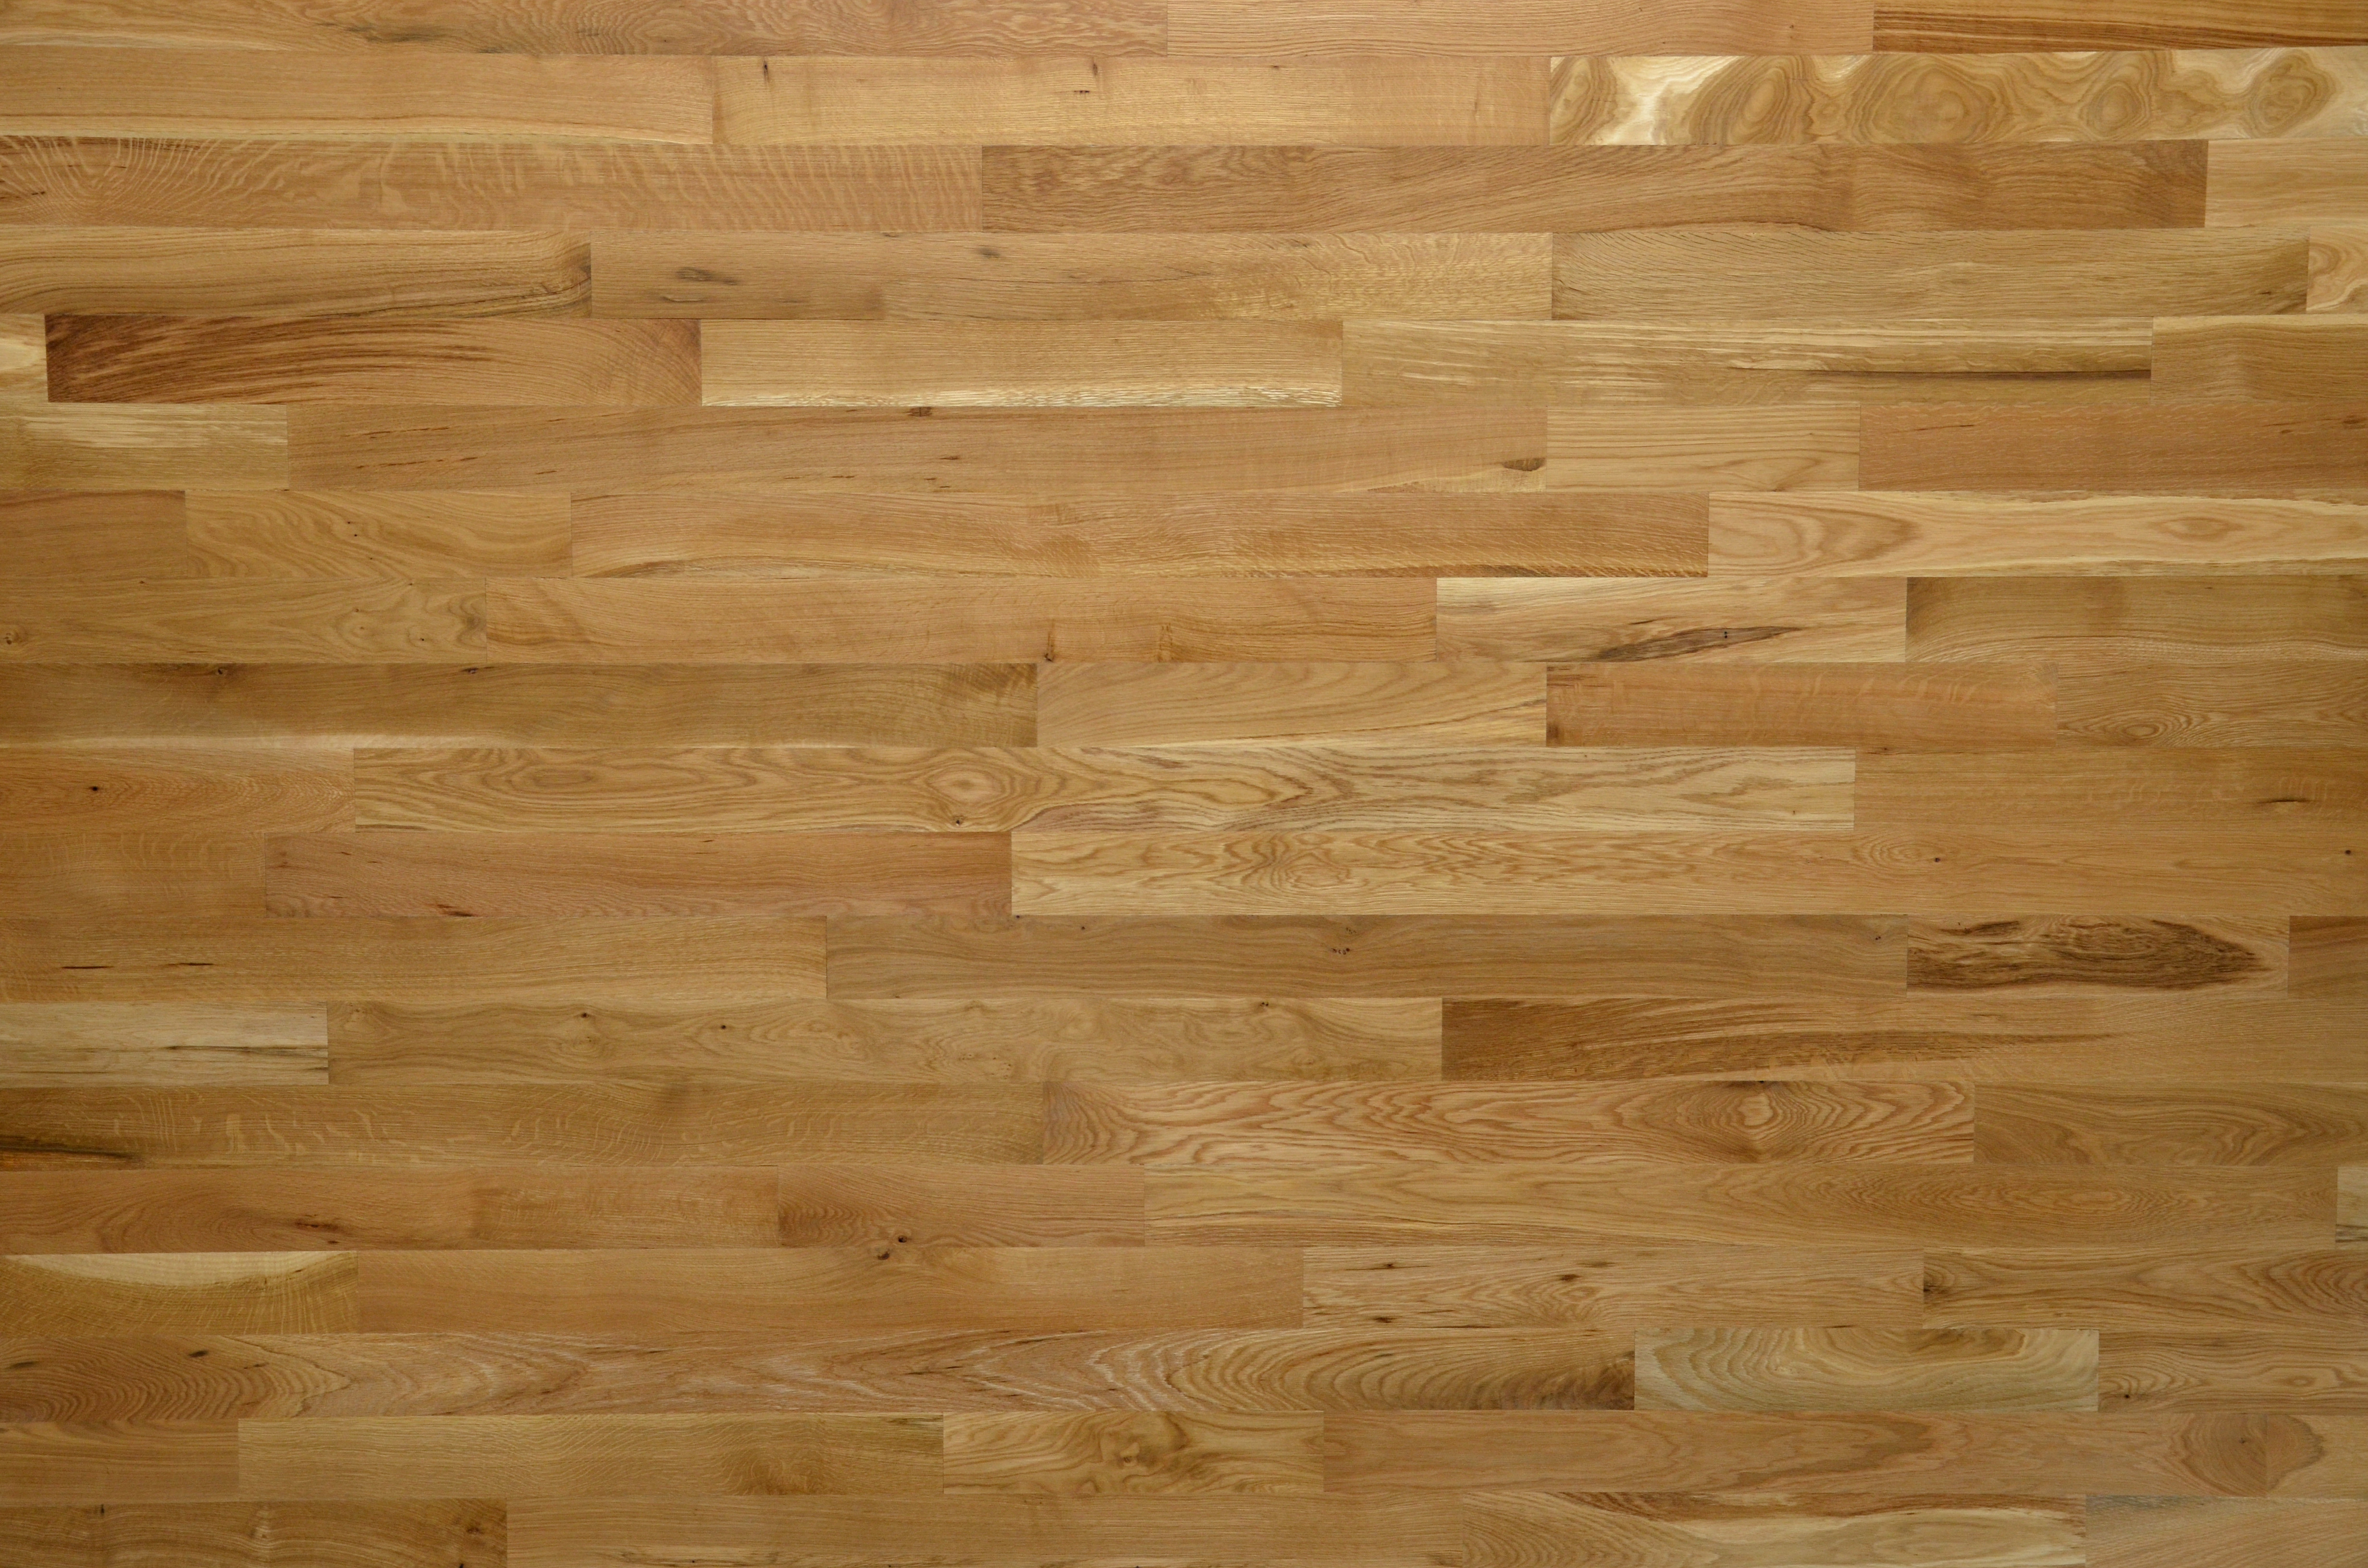 28 Famous 2 Inch Oak Hardwood Flooring 2024 free download 2 inch oak hardwood flooring of lacrosse hardwood flooring walnut white oak red oak hickory intended for 1 common white oak